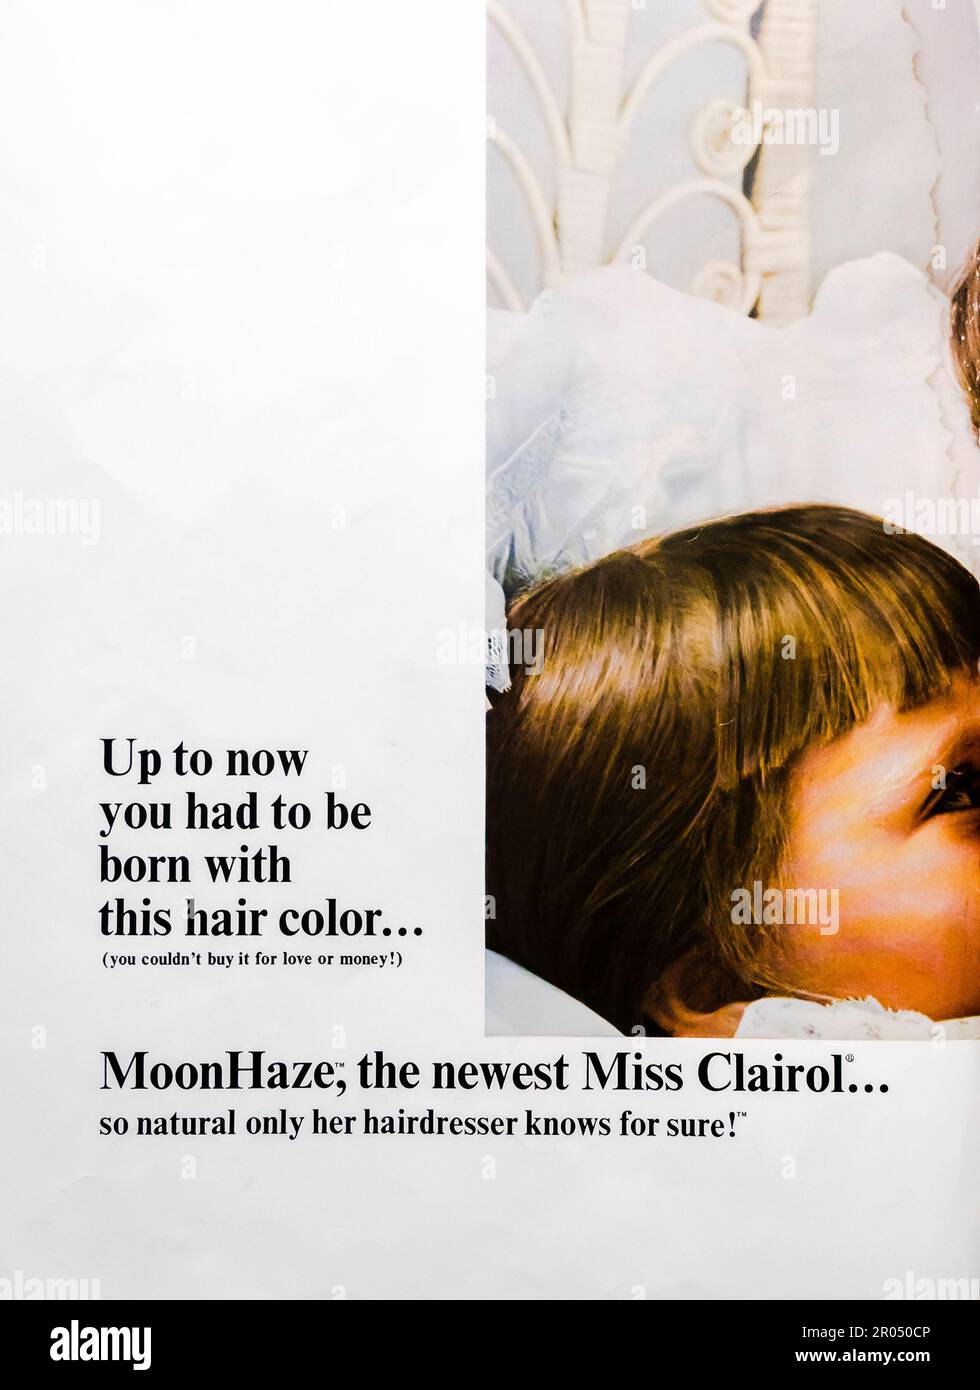 Miss Clairol Hair Coloring-Moon Haze Werbeanzeige in einem Journal Magazin, 1965 Stockfoto